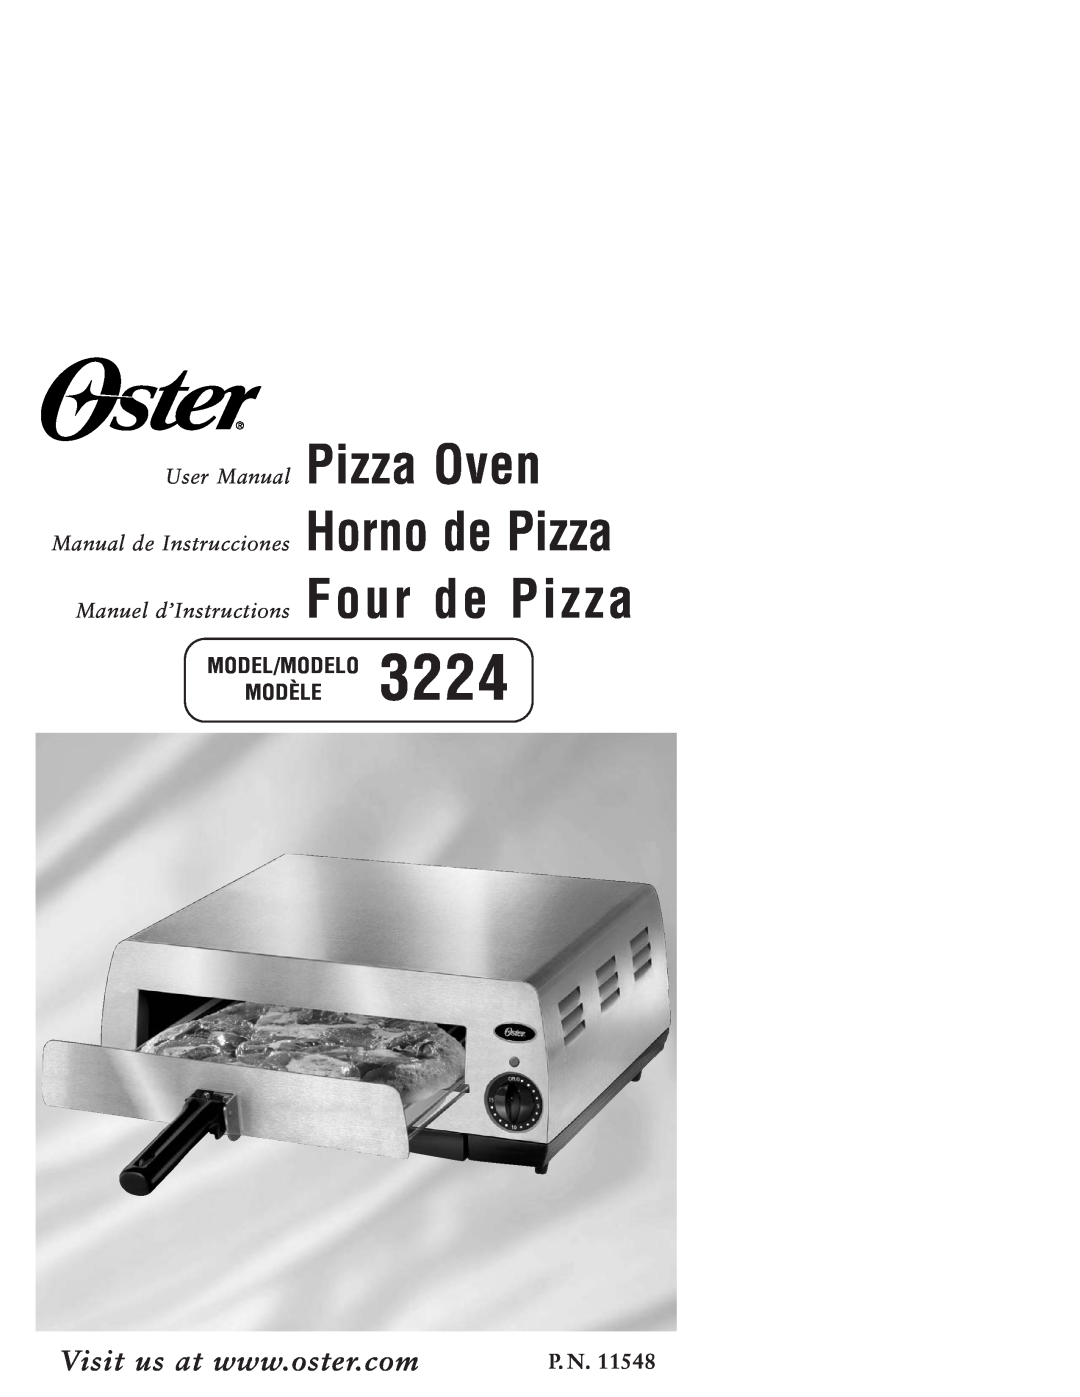 Sunbeam 3224 user manual Model/Modelo Modèle, P. N, Manual de Instrucciones Horno de Pizza 